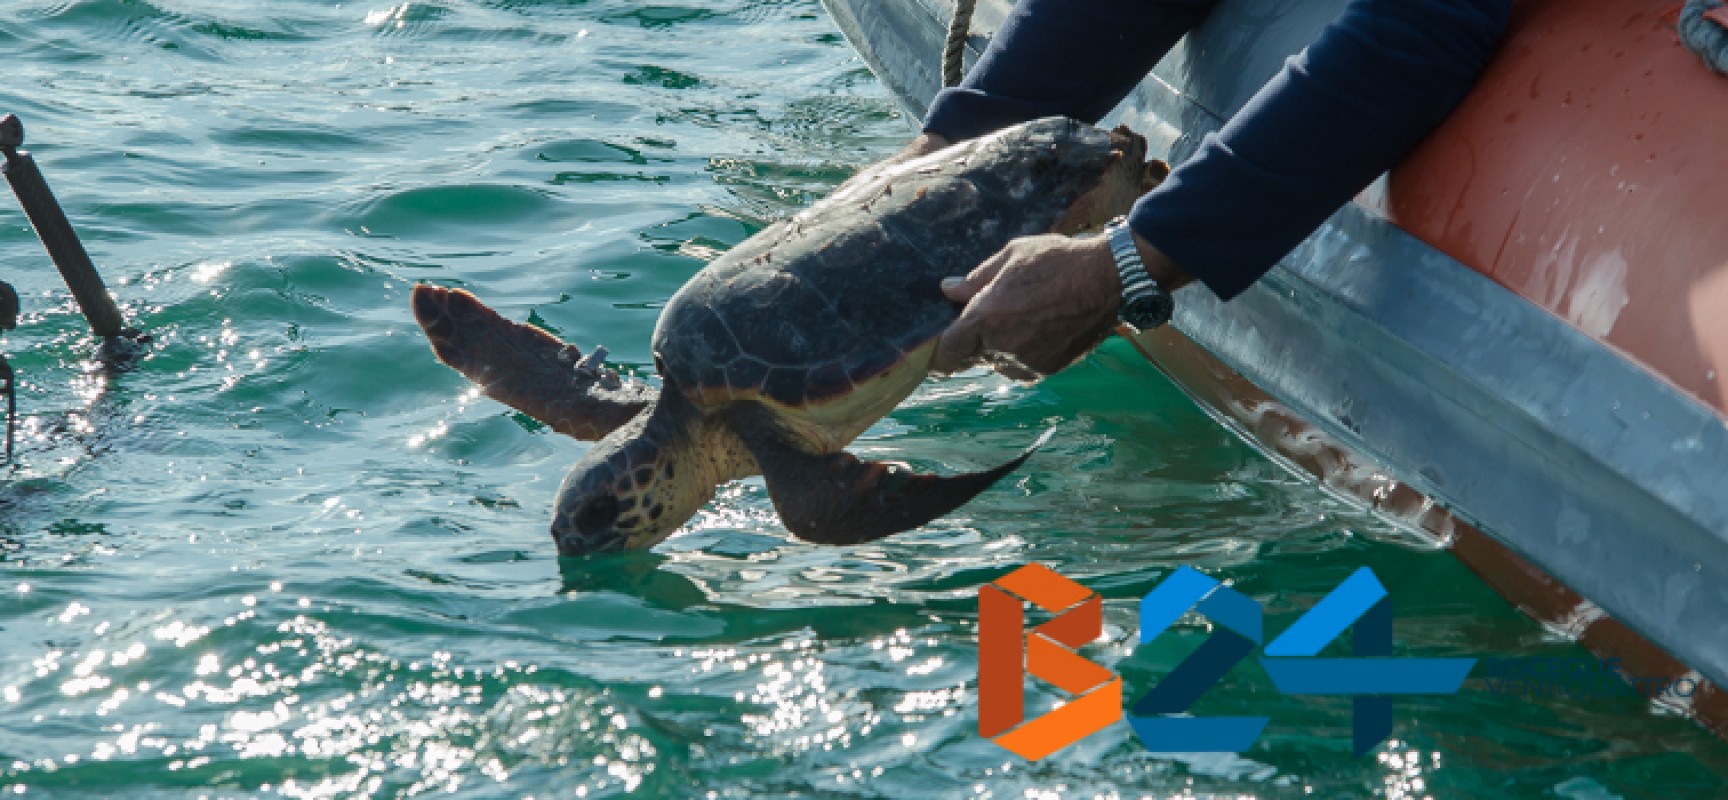 Liberazione di due tartarughe marine nel mare di Bisceglie